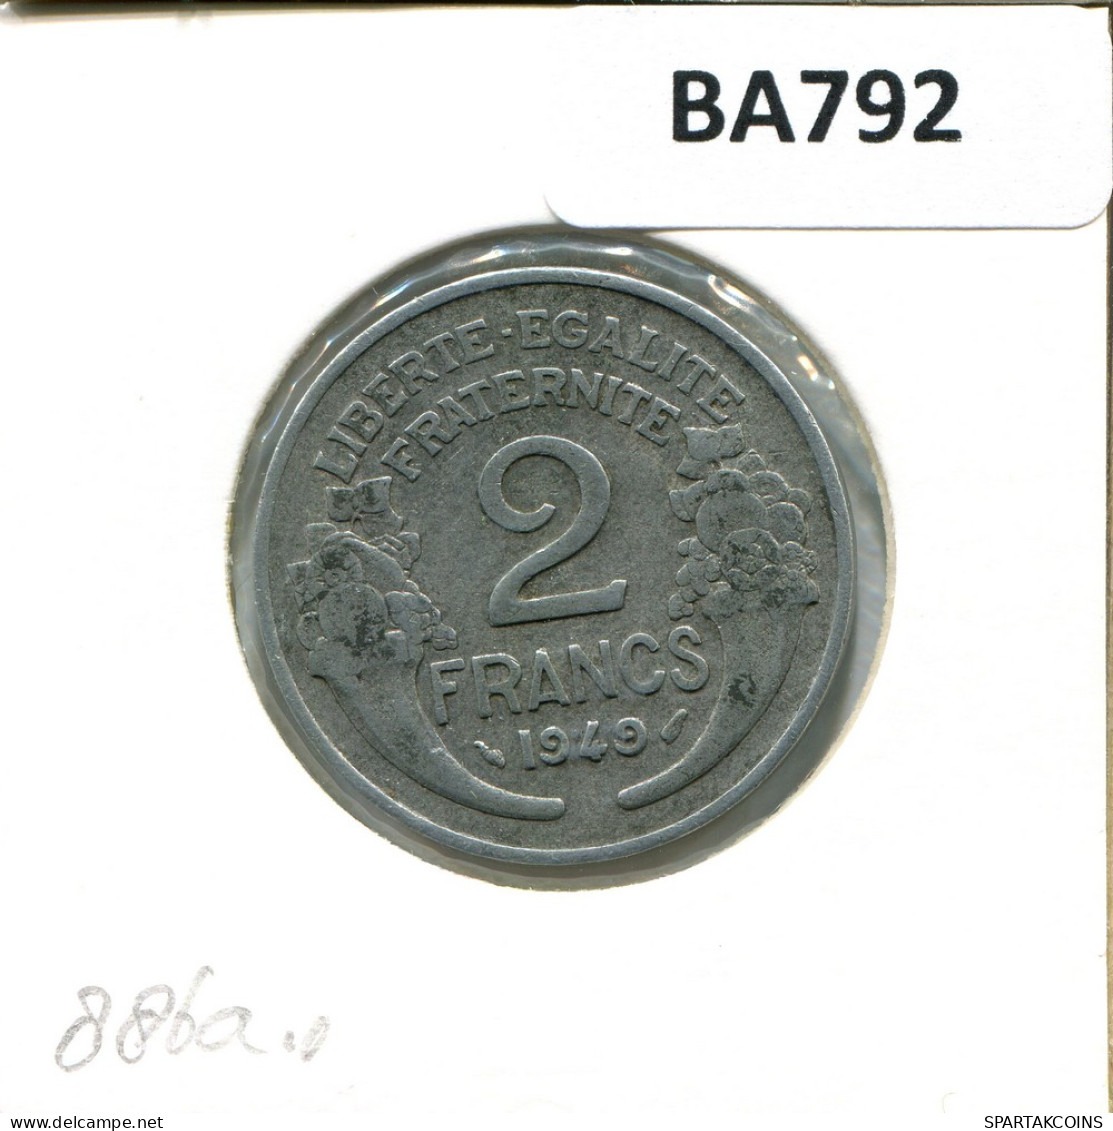 2 FRANCS 1949 FRANCE French Coin #BA792 - 2 Francs